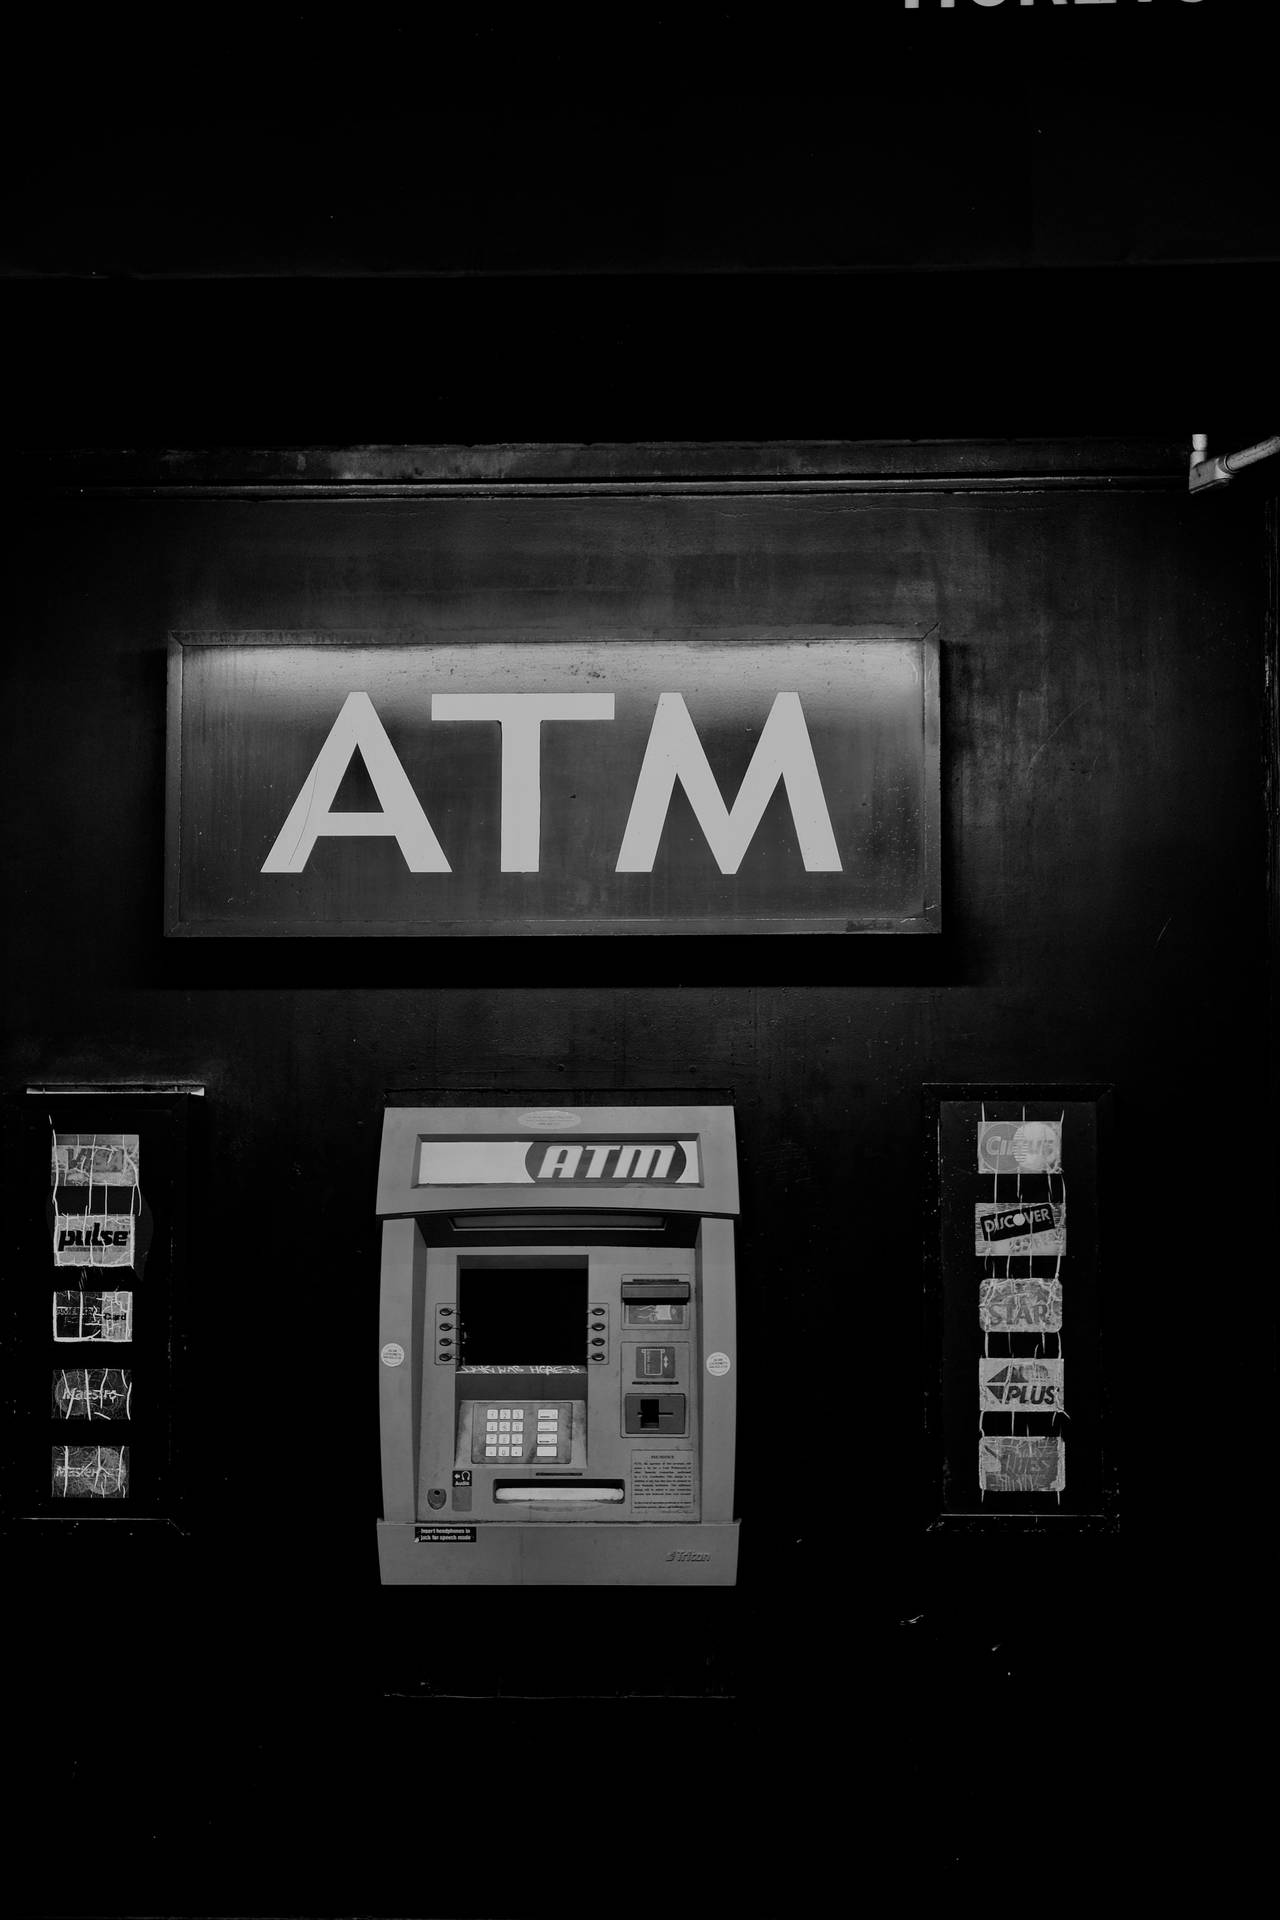 Bank ATM Machine Wallpaper